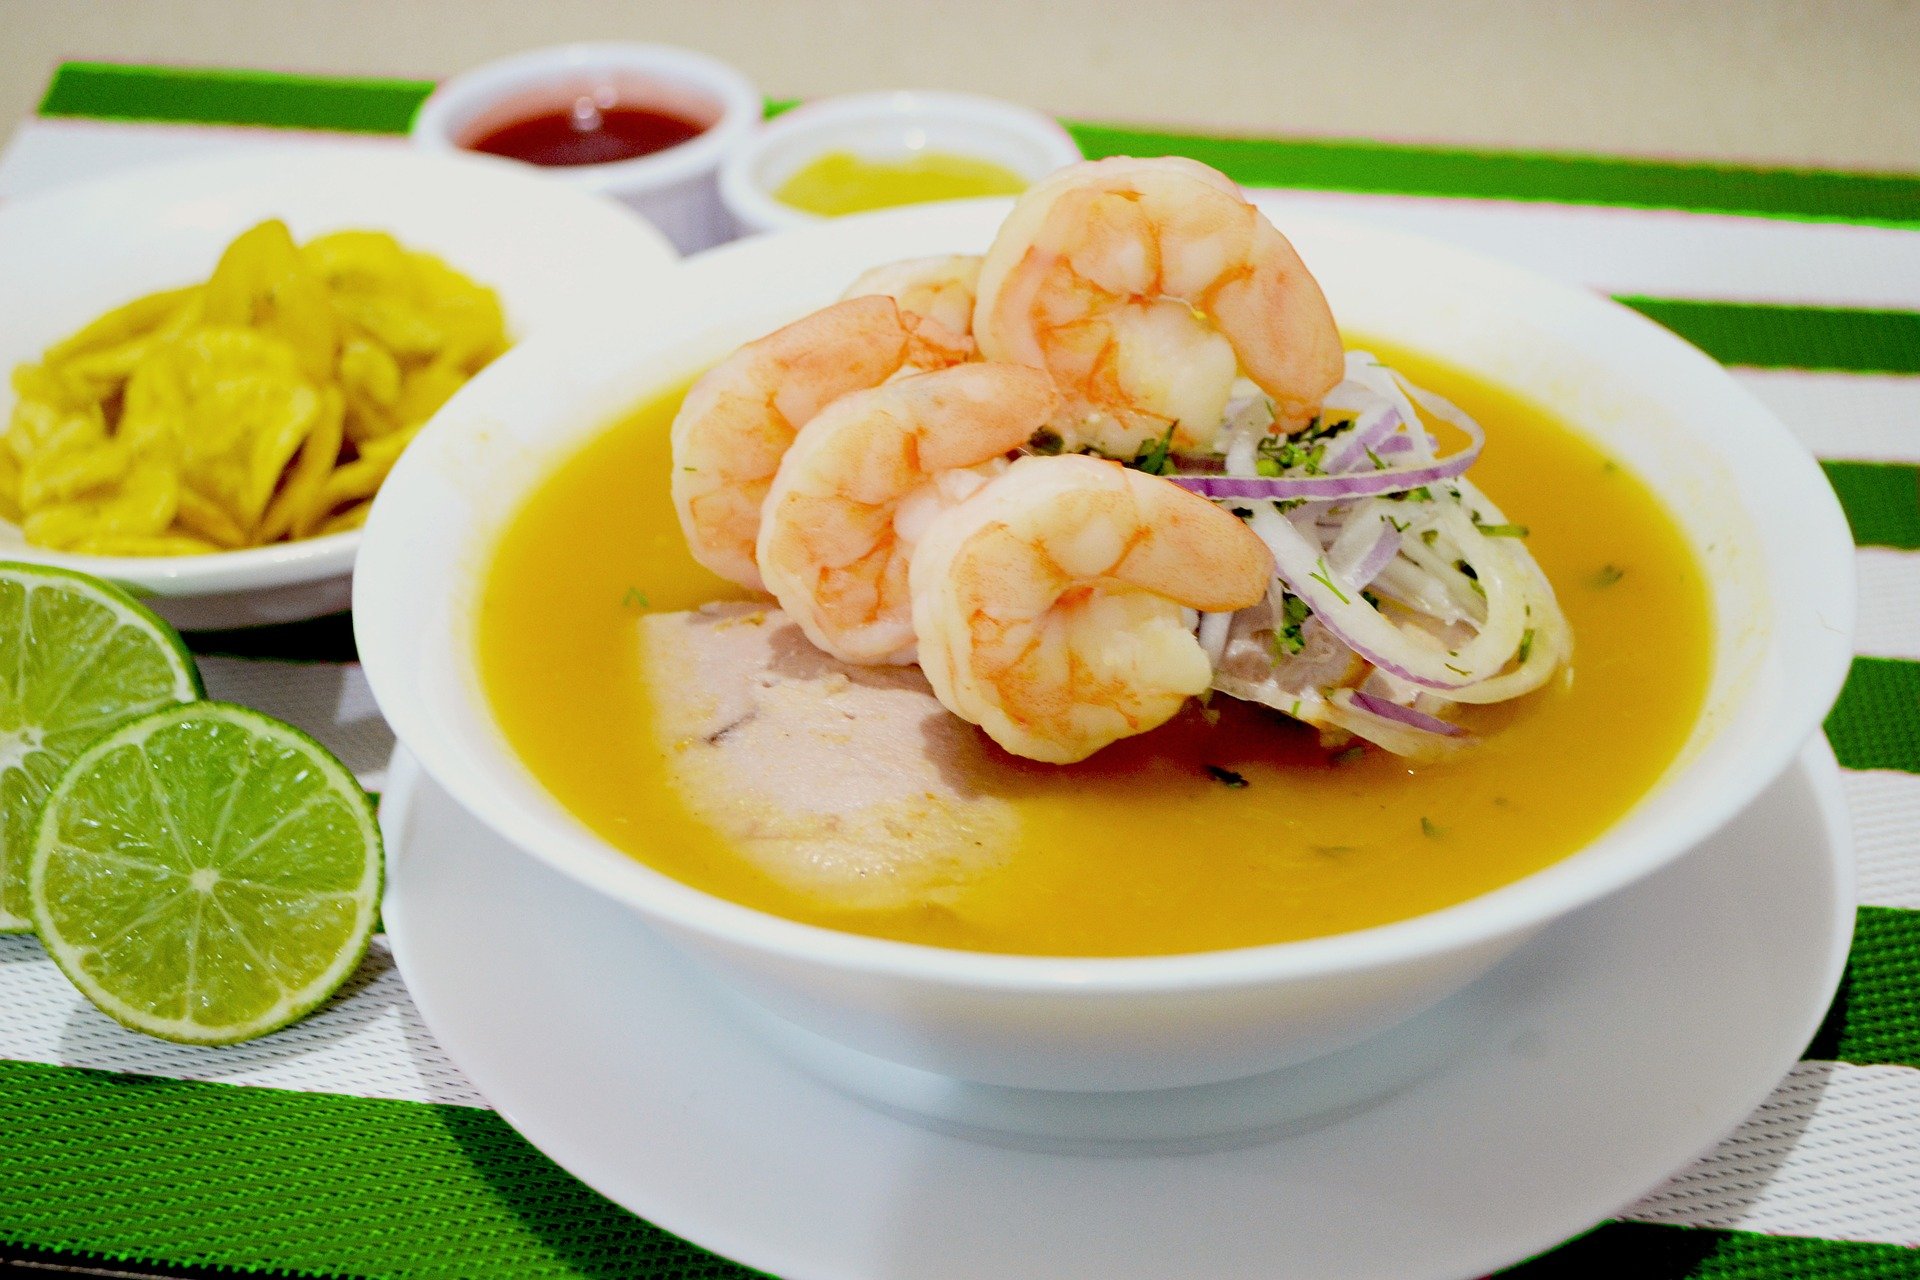 Imagen 2. Otro plato típico de la región: encebollado mixto. Tomada de Juan Carlos Rodríguez en Pixabay